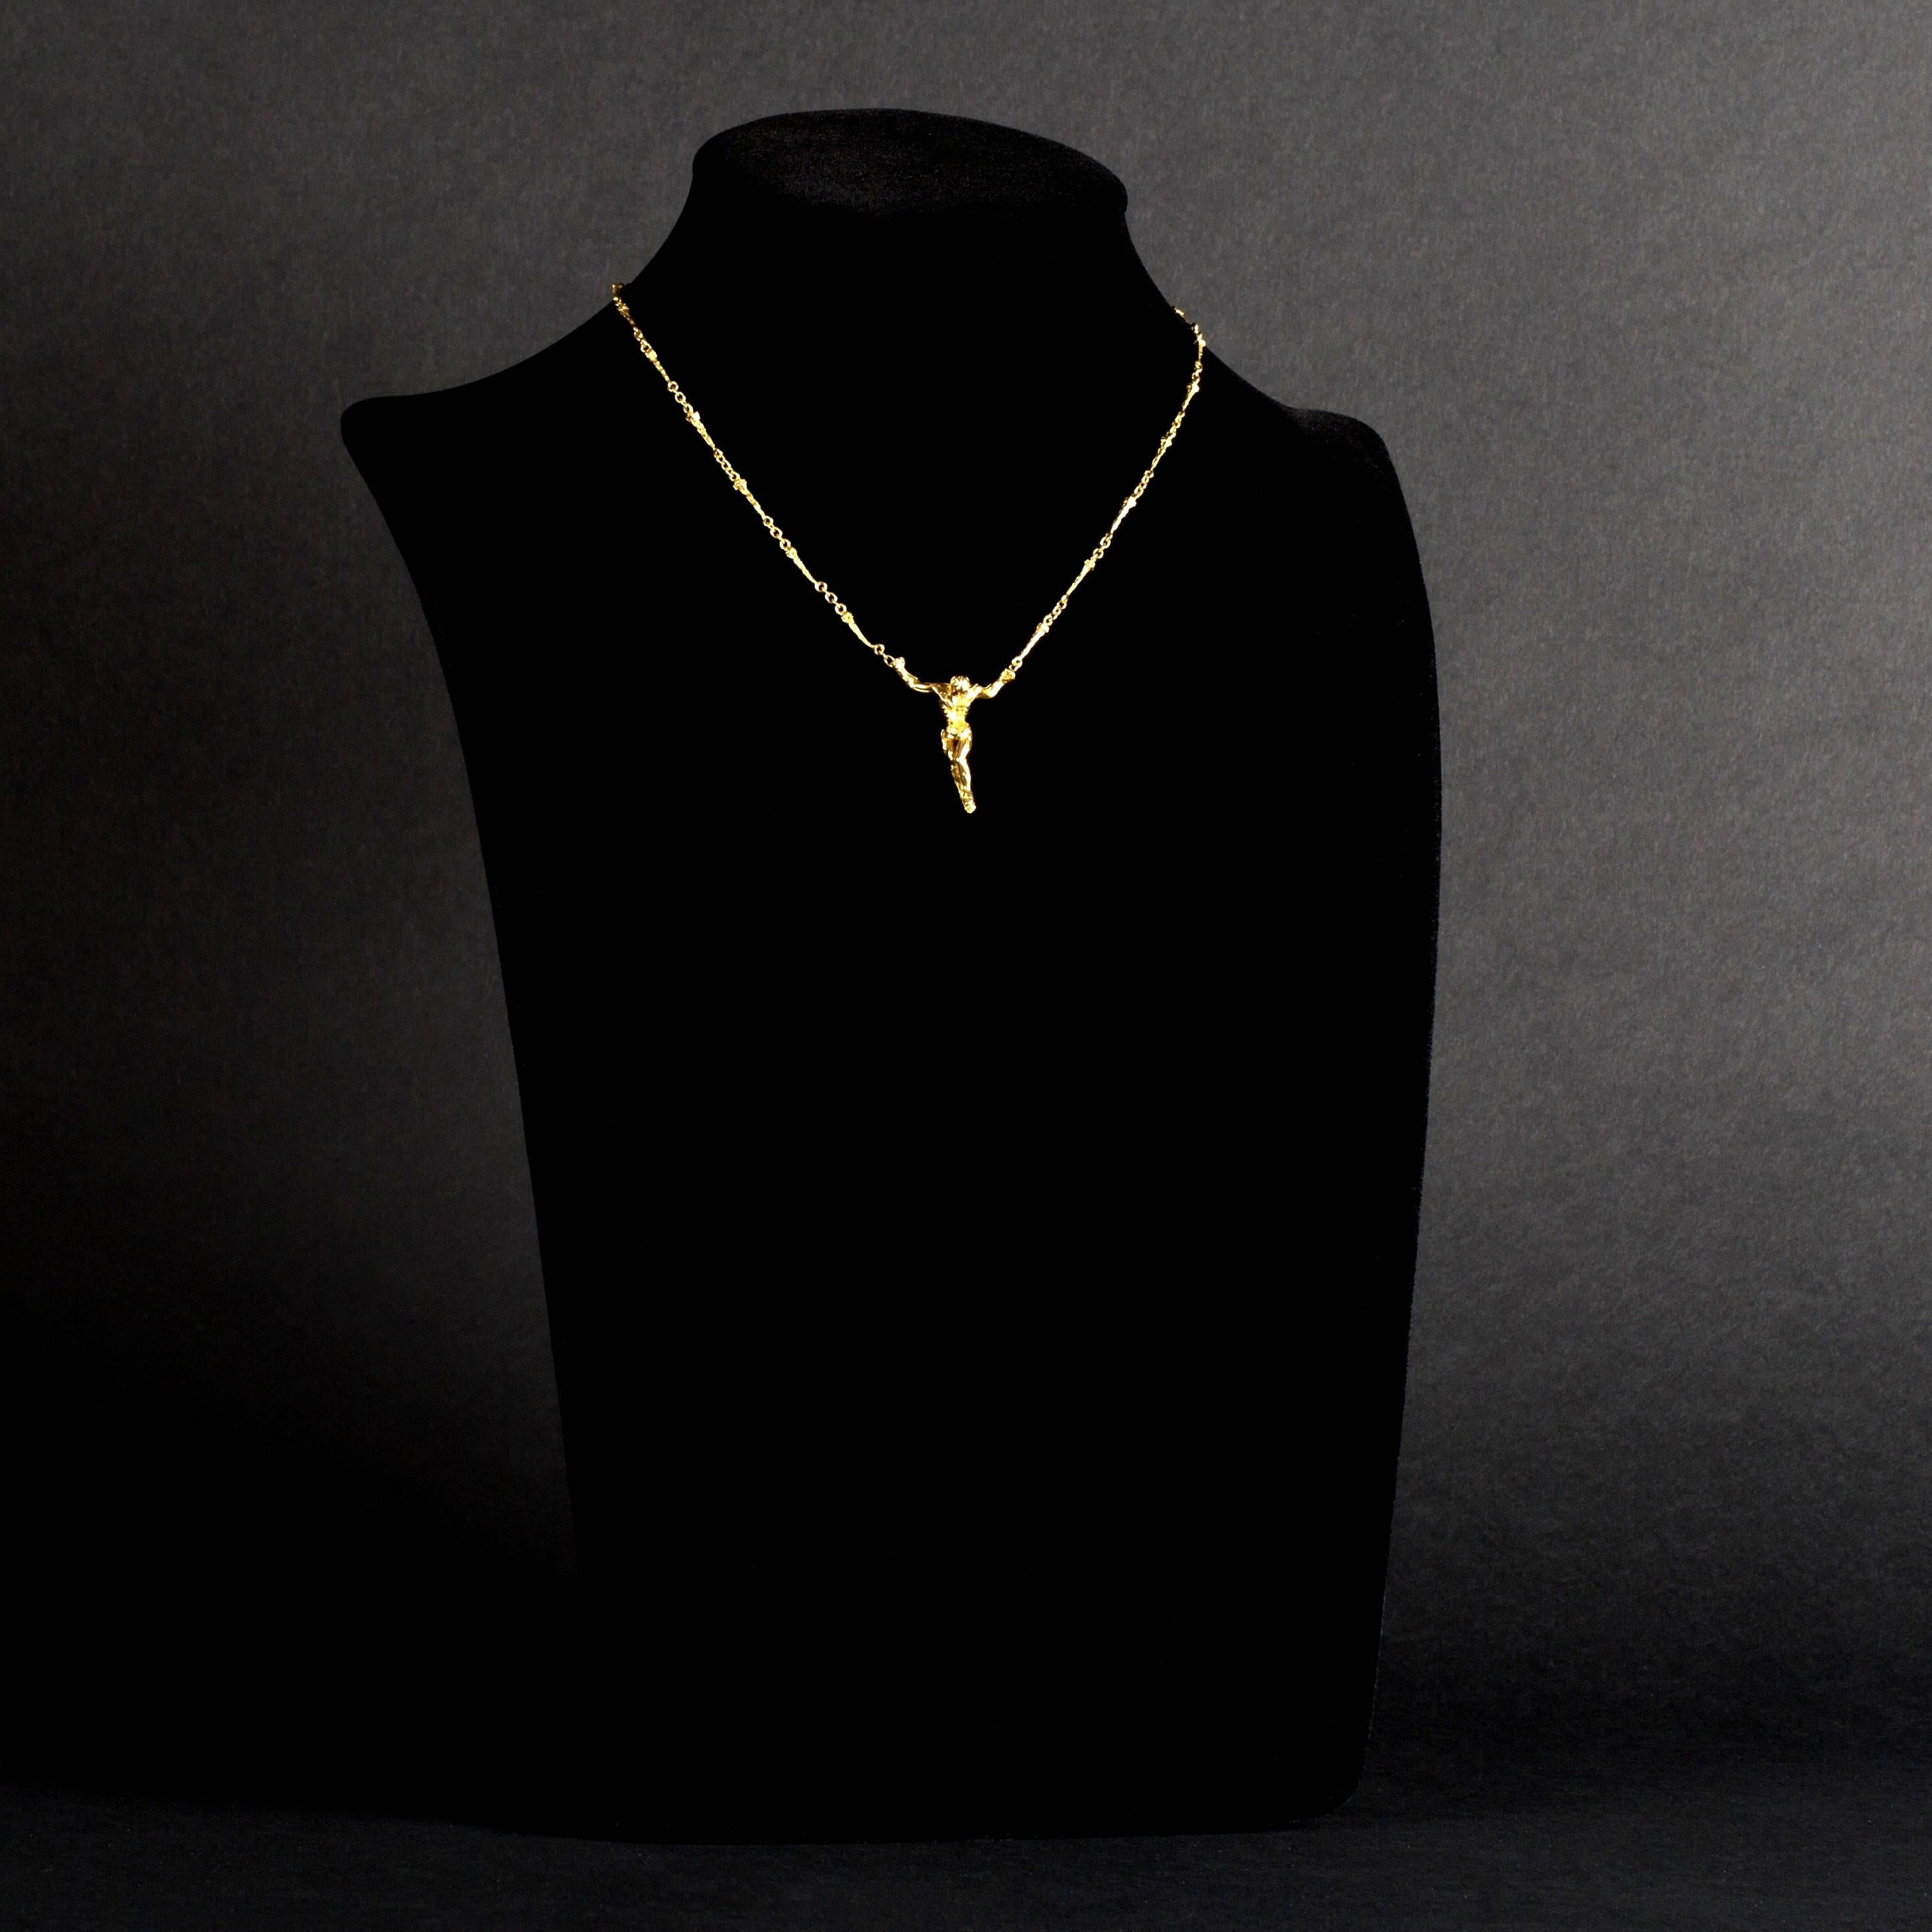 Salvador Dali - Christ - Signed Gold Necklace 1